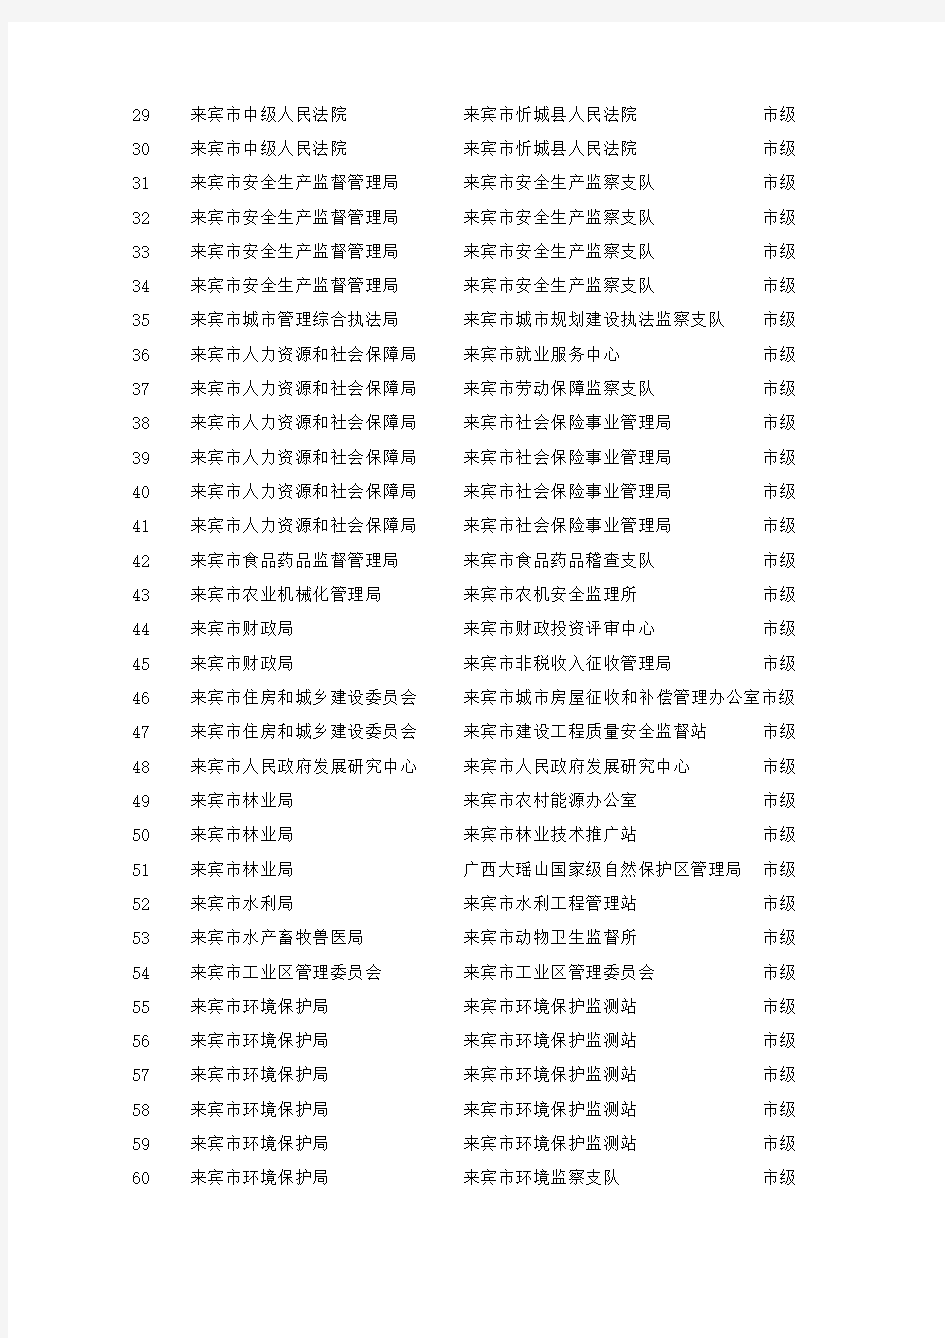 广西壮族自治区2014年度考试录用公务员职位计划表